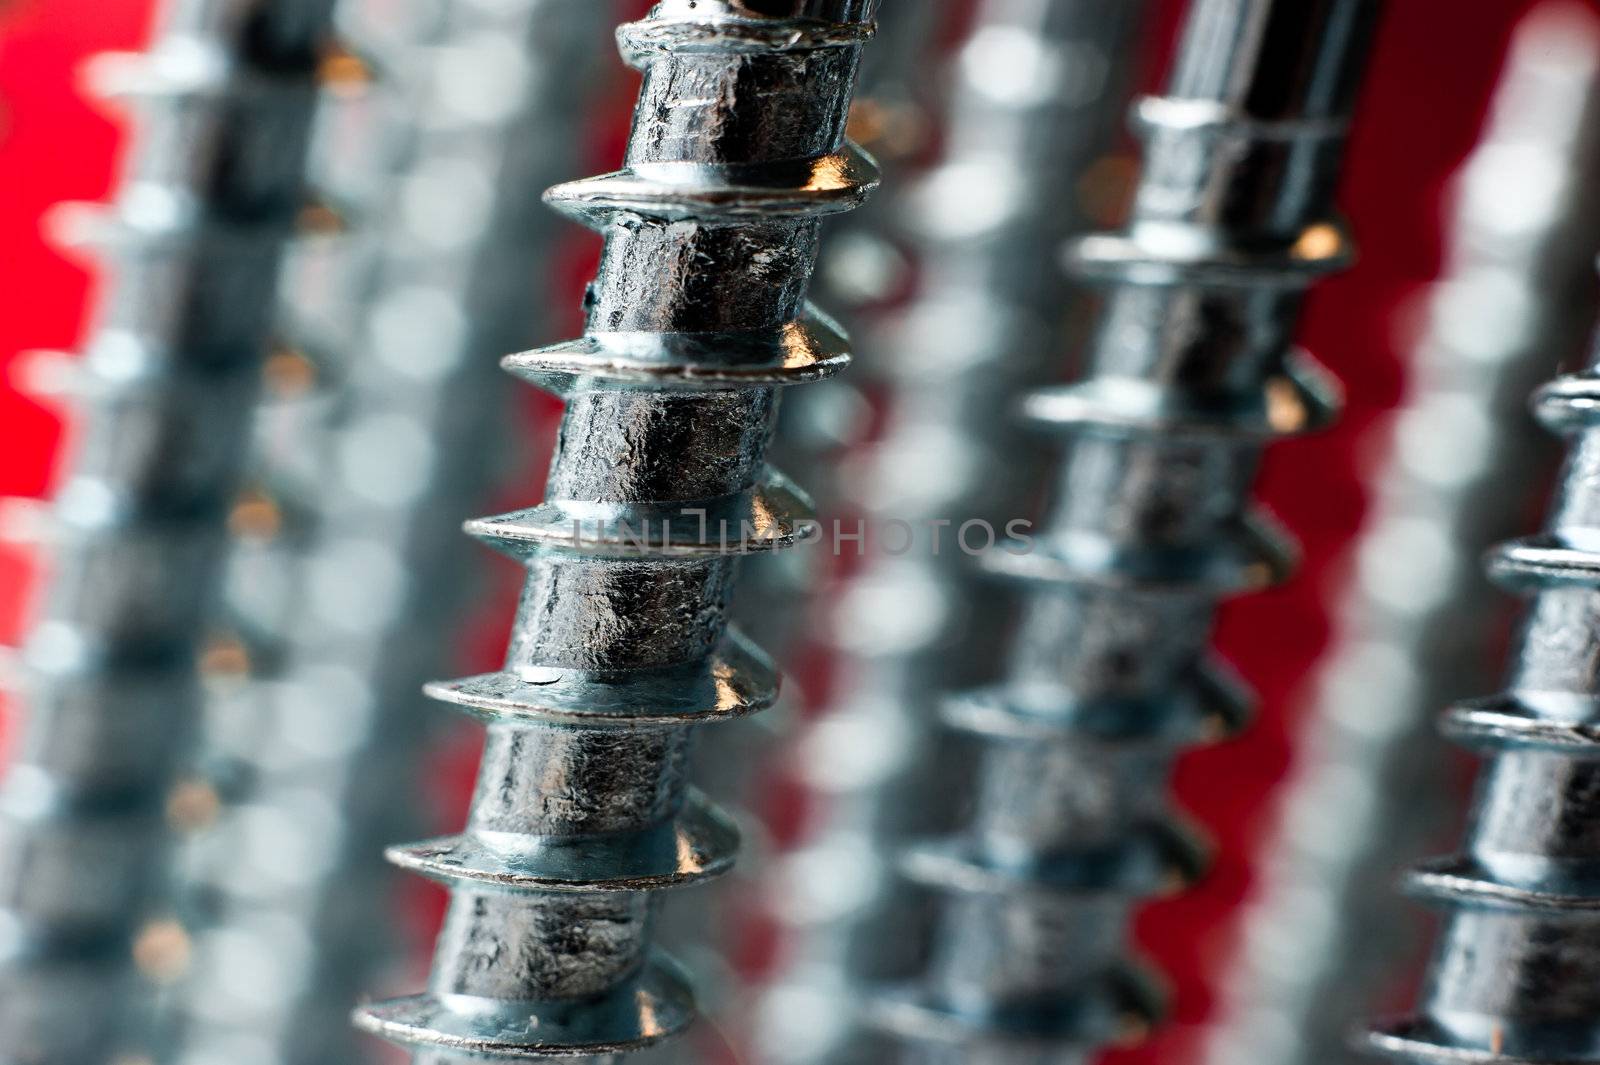 screw on blur background by GekaSkr